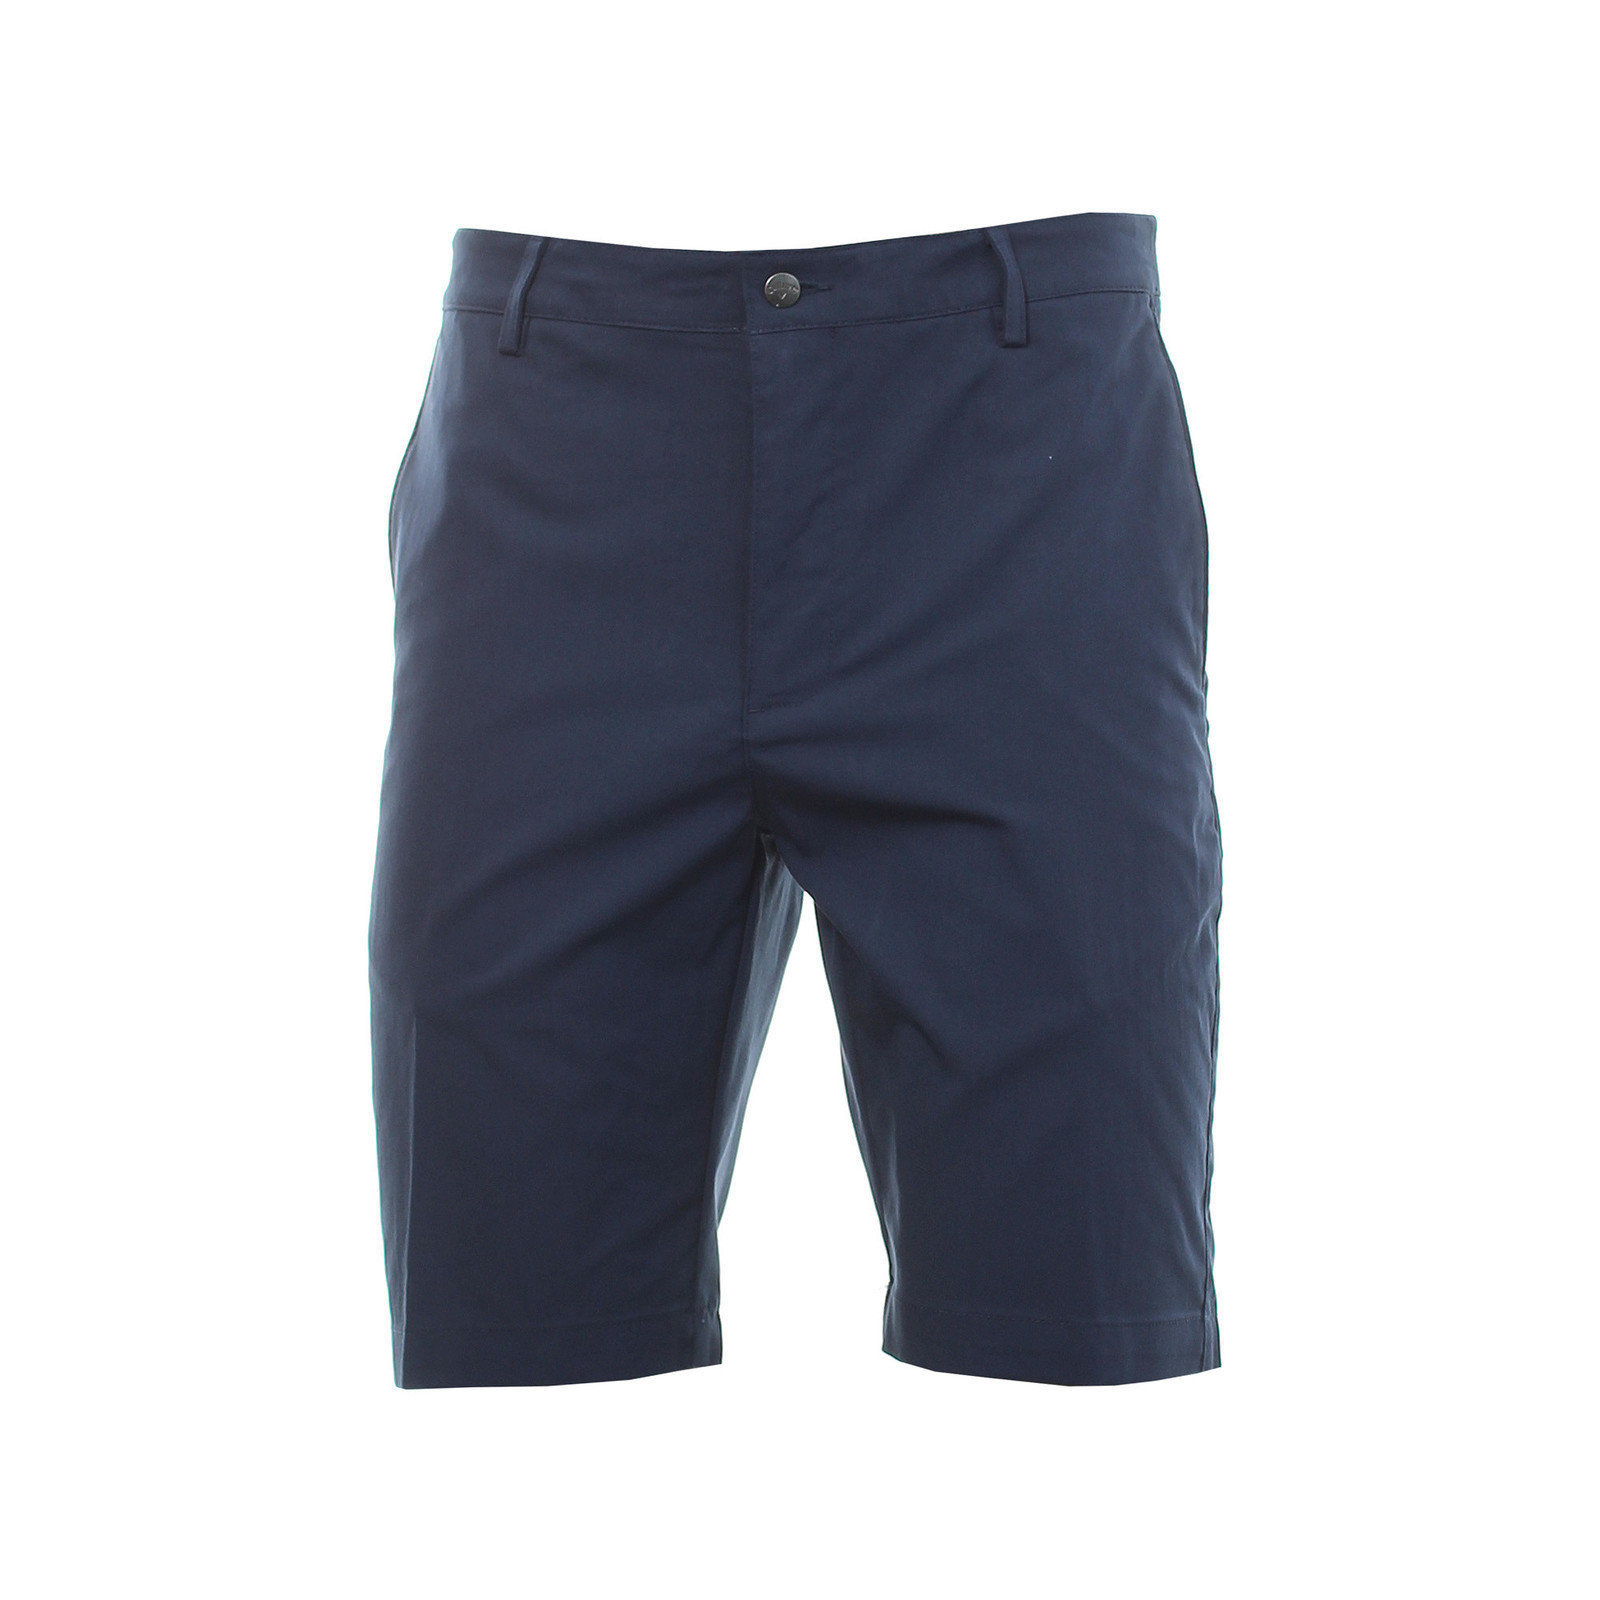 Pantalones cortos Callaway Cool Max Ergo Mens Shorts Dress Blue 30